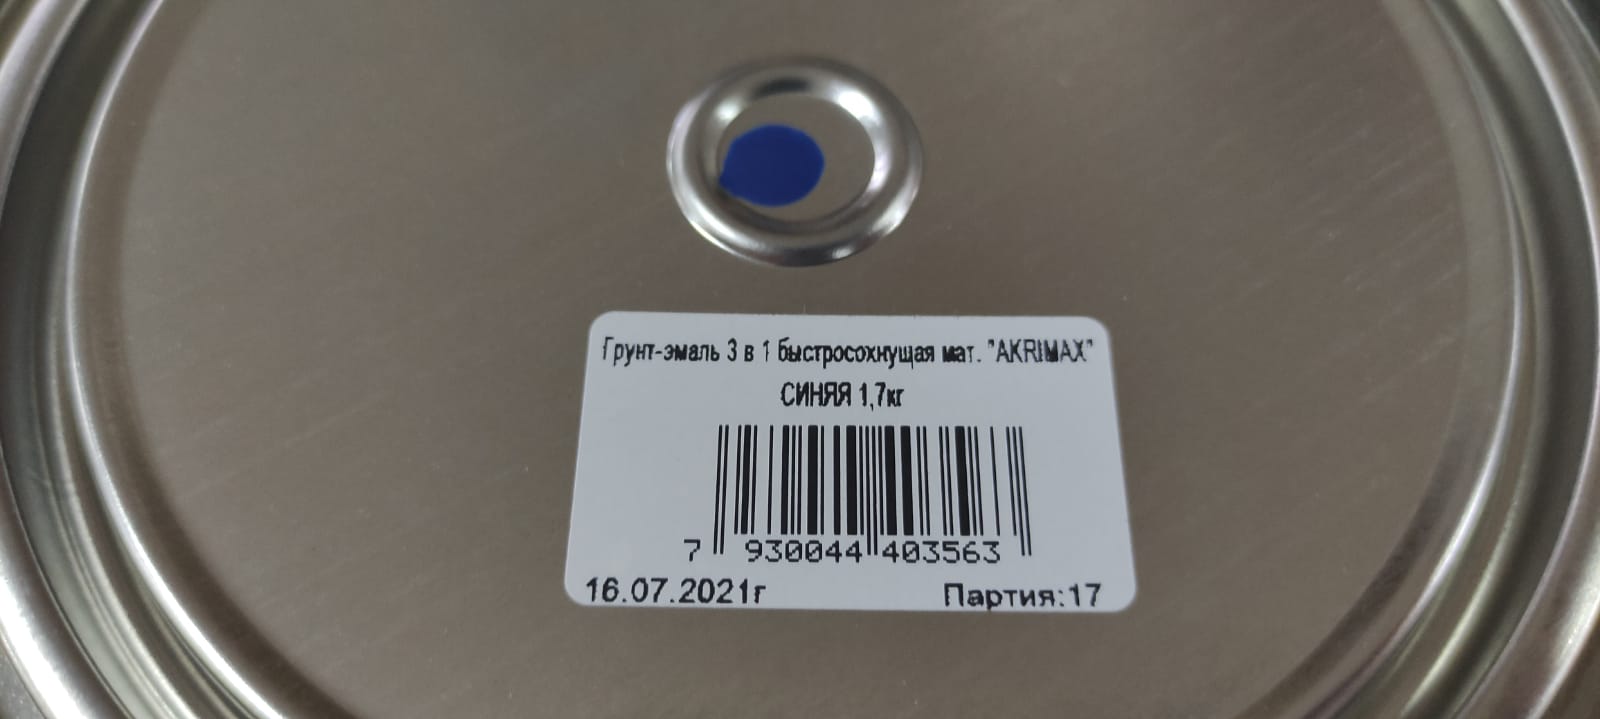 Грунт - эмаль по ржавчине 3 в1 быстросохнущая матовая Akrimax 1,7 кг (синяя)